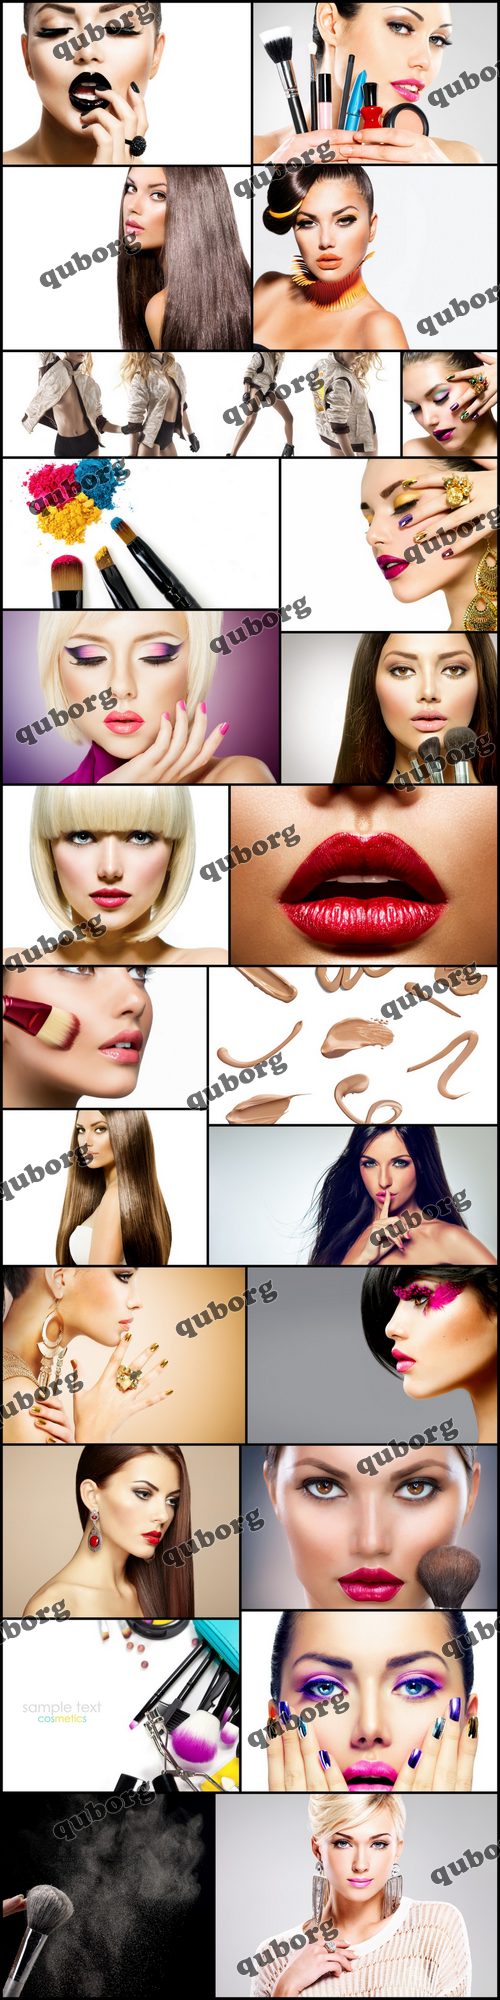 Stock Photos - Make-up